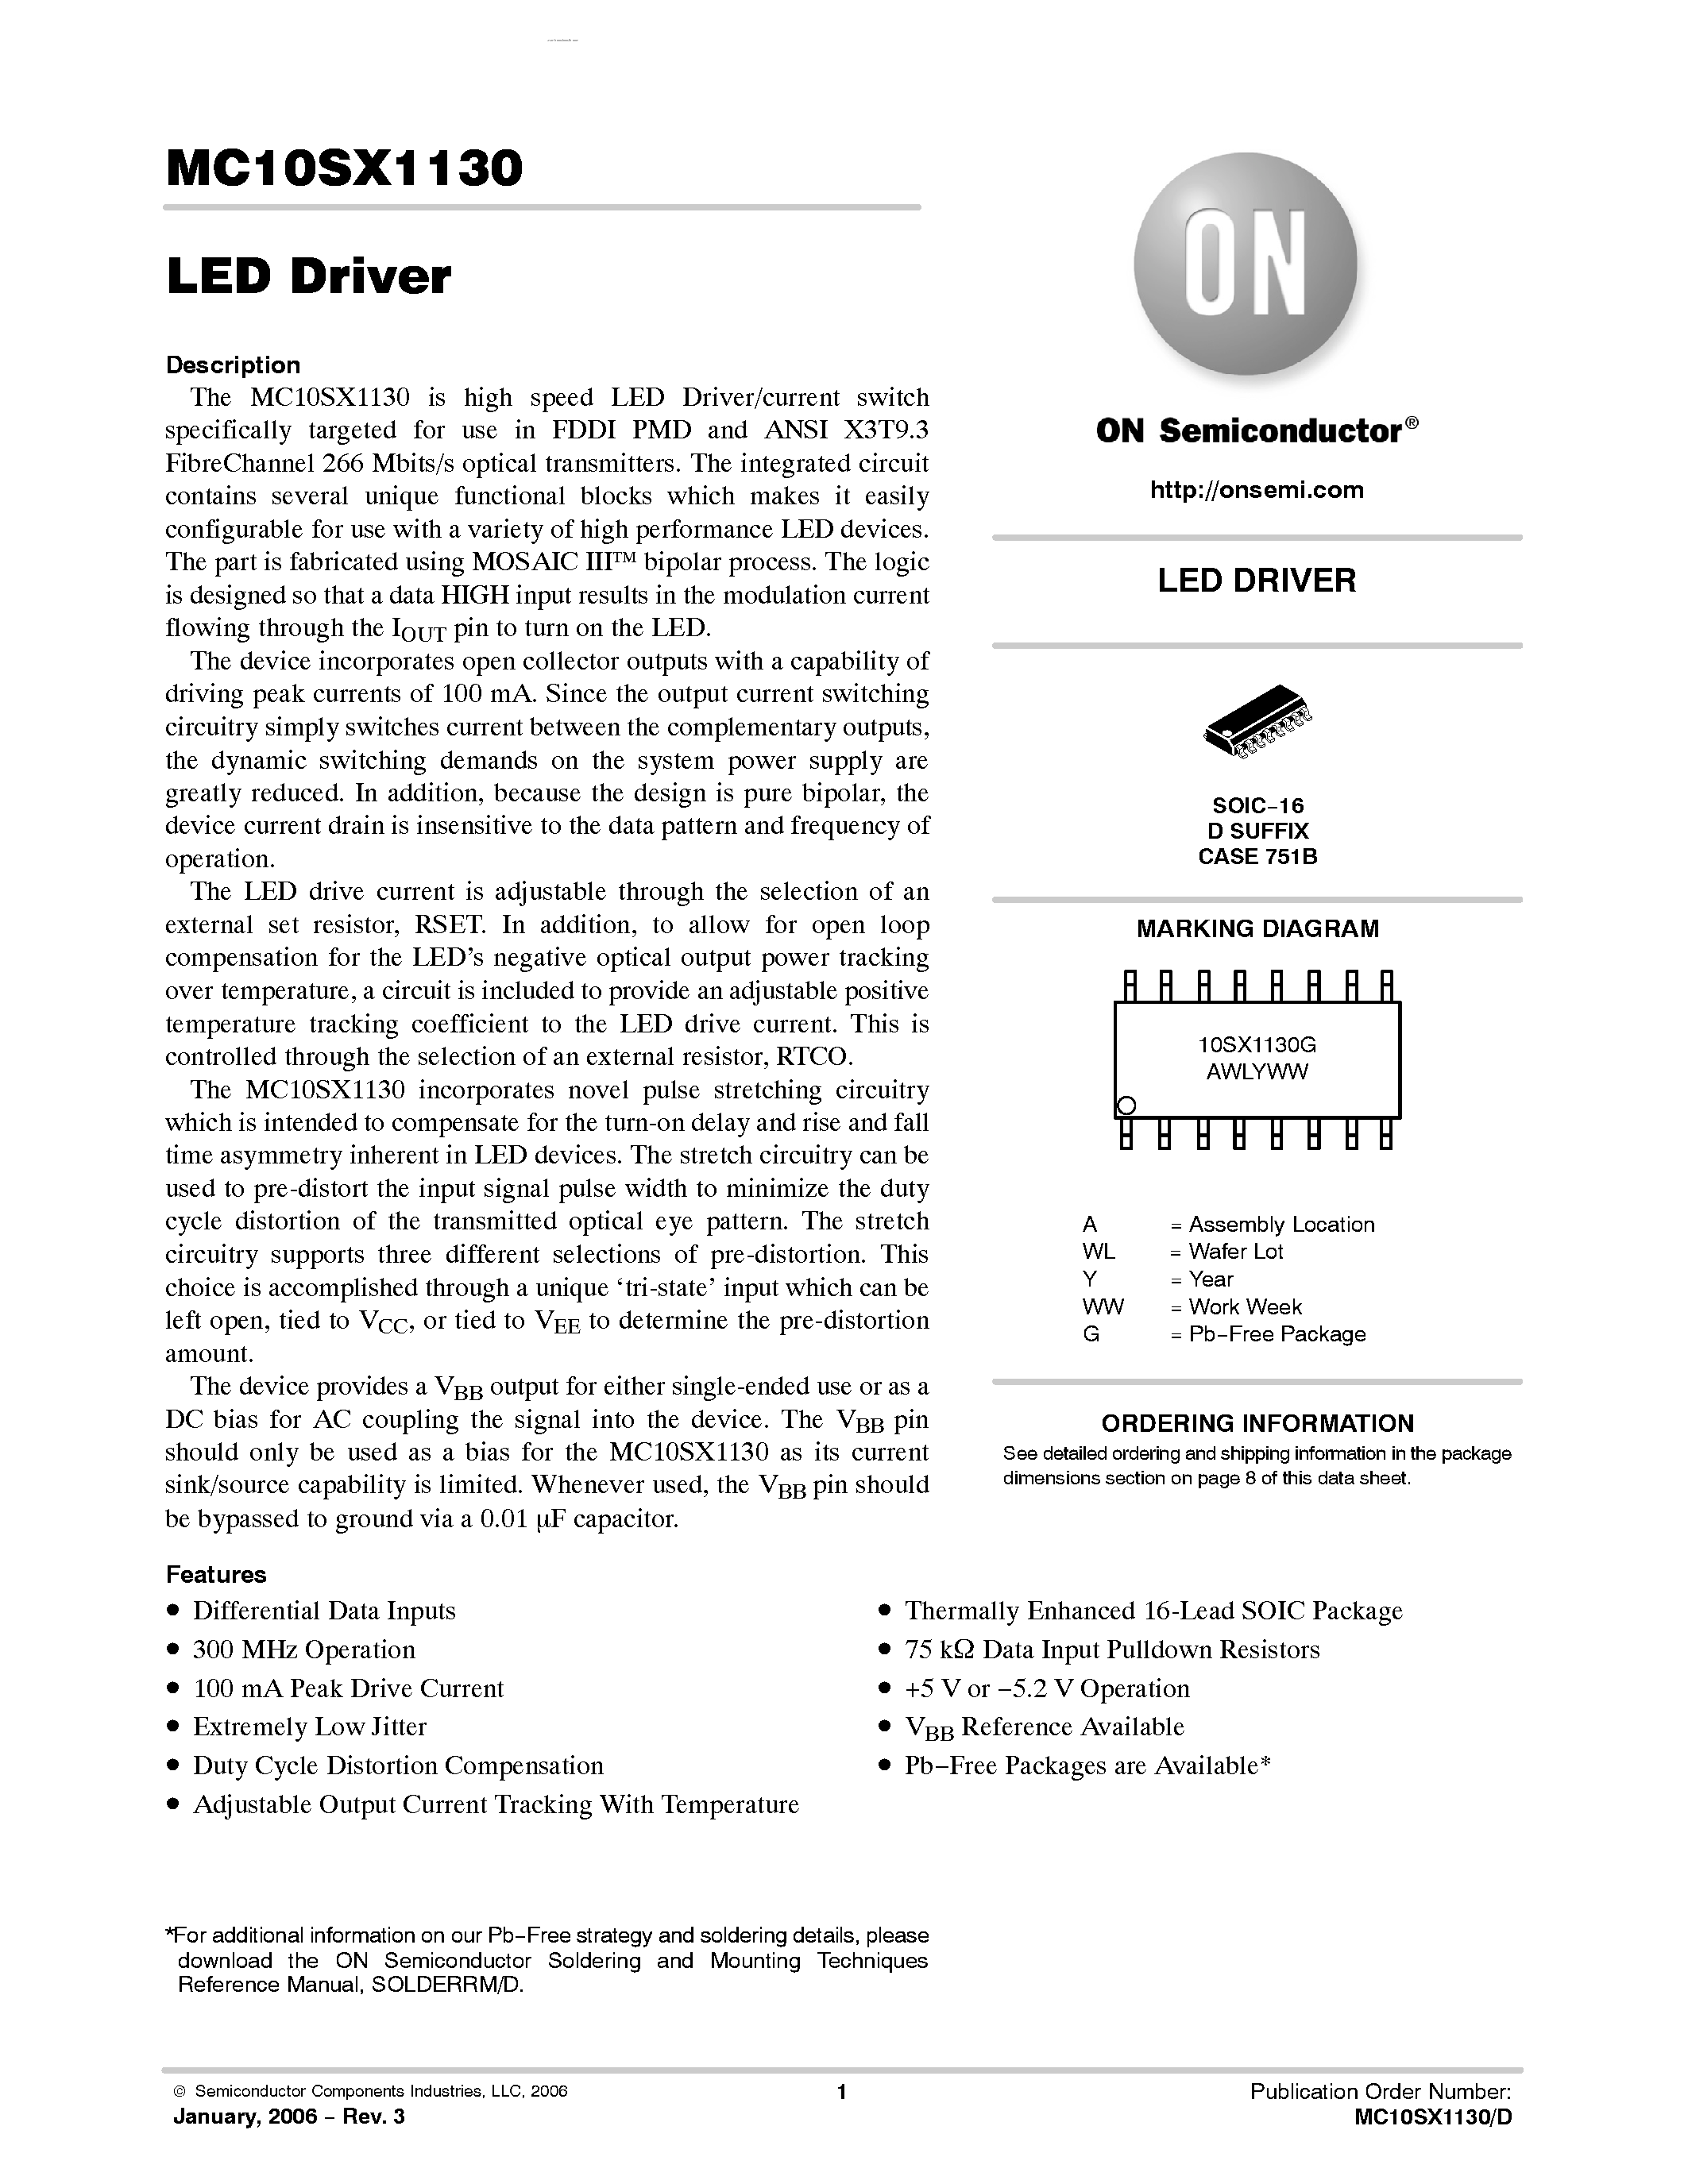 Даташит MC10SX1130 - LED DRIVER страница 1